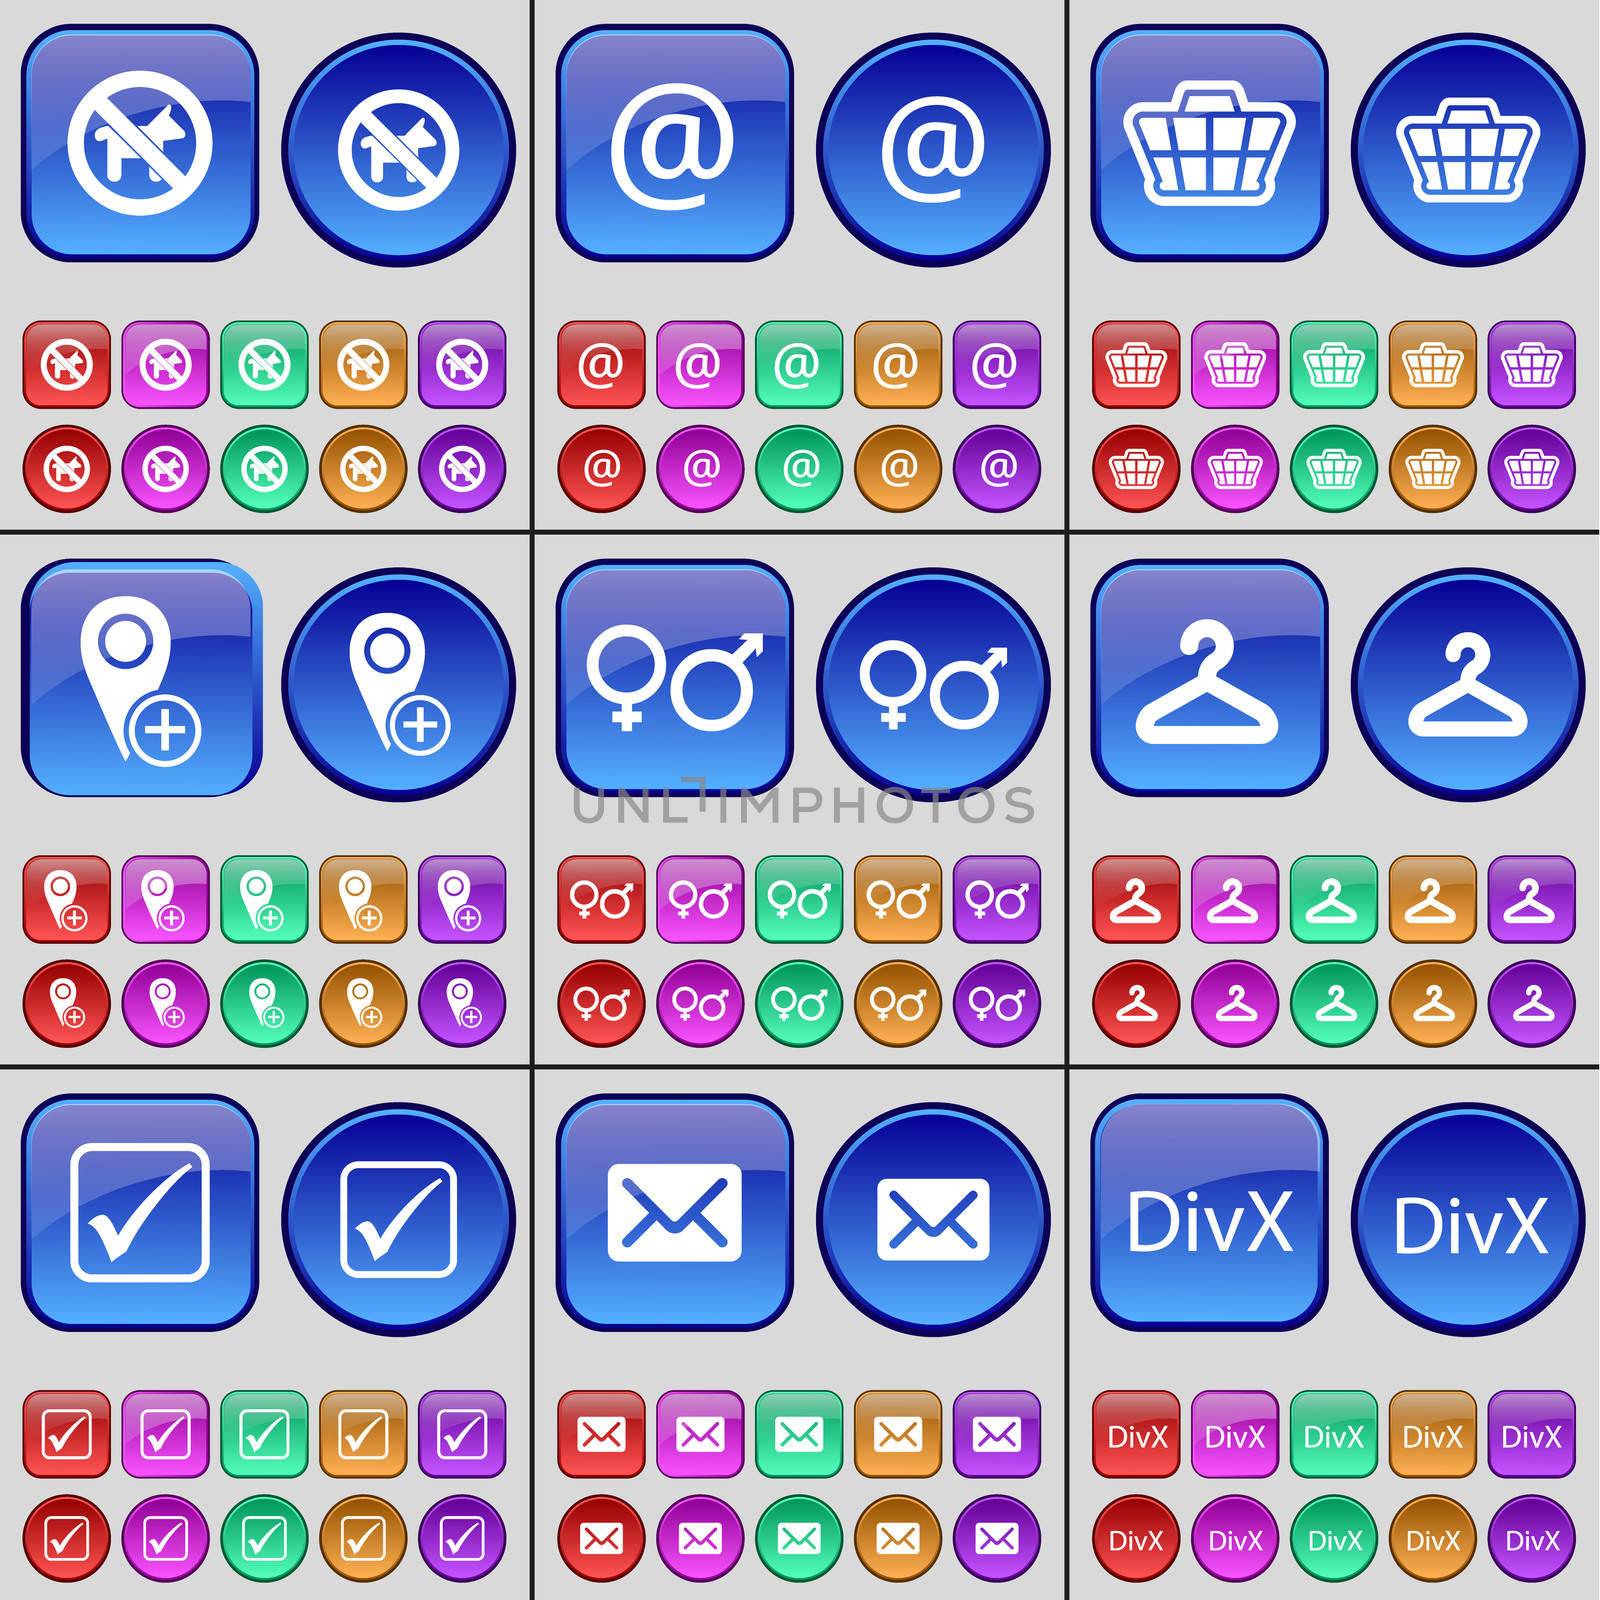 No pets allowed, Mail, Basket, Checkpoint, Gender symbols, Hanger, Tick, Message, DivX. A large set of multi-colored buttons. illustration